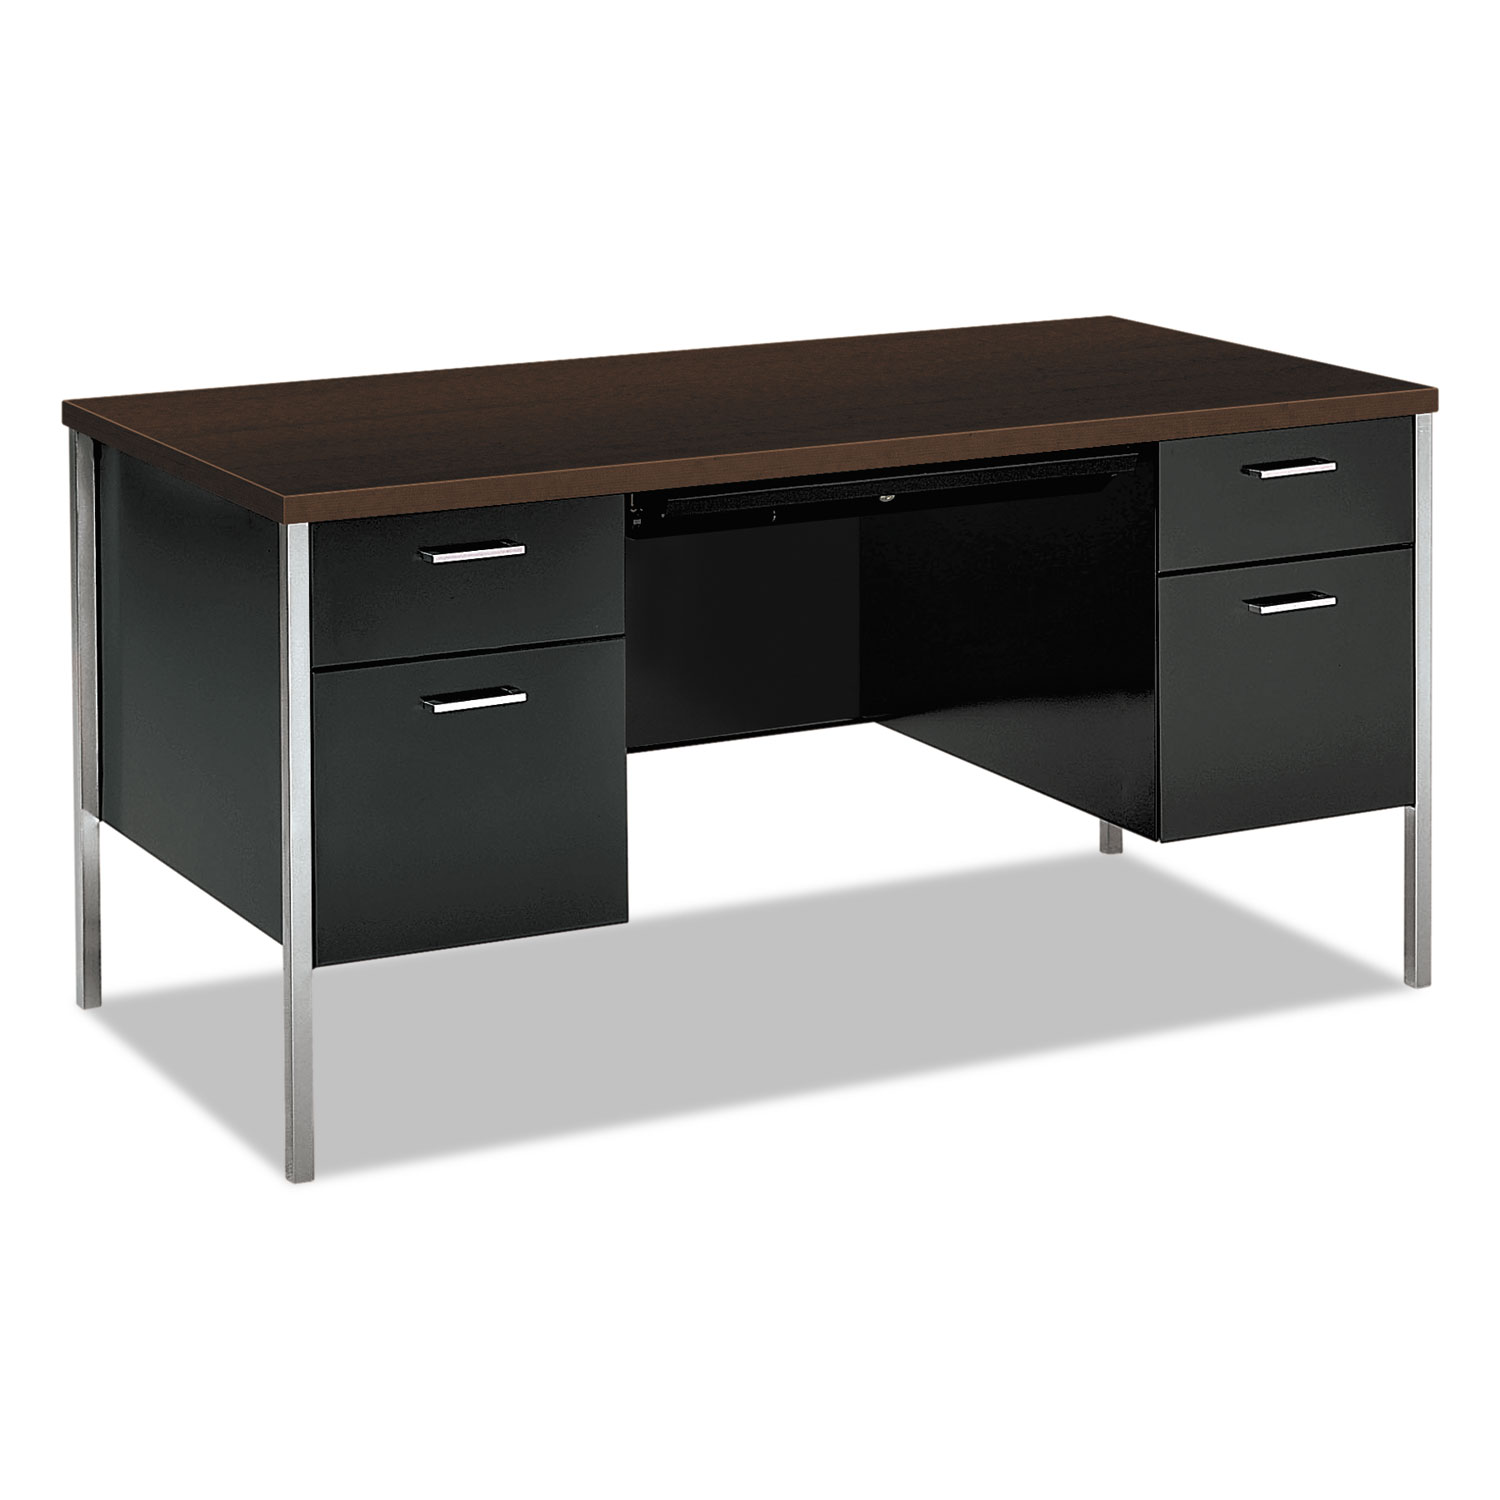 34000 Series Double Pedestal Desk, 60w x 30d x 29 1/2h, Mocha/Black